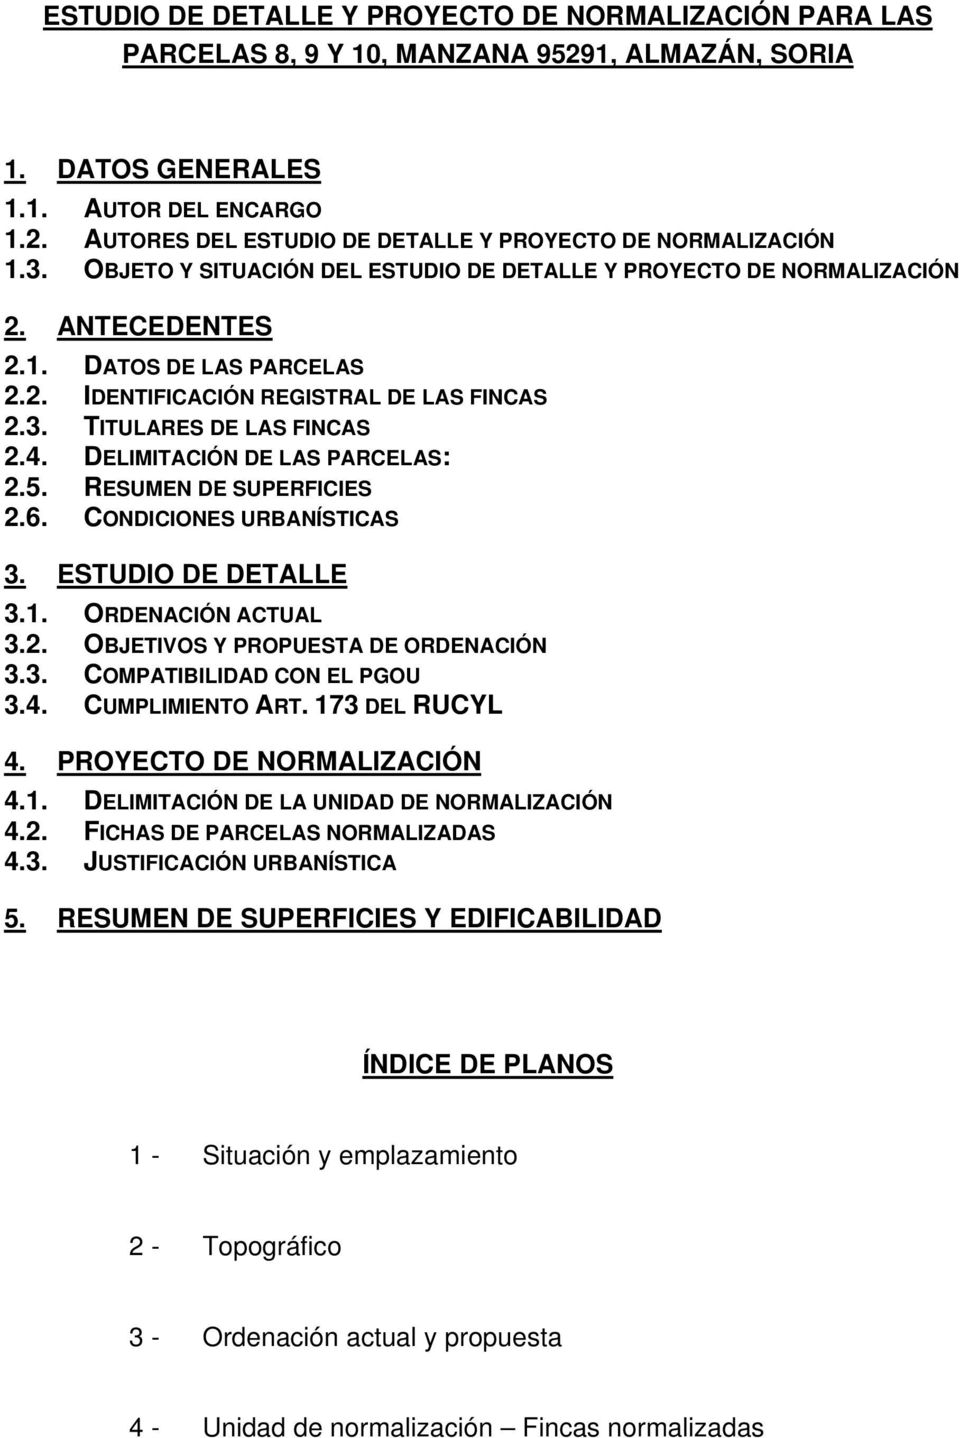 DELIMITACIÓN DE LAS PARCELAS: 2.5. RESUMEN DE SUPERFICIES 2.6. CONDICIONES URBANÍSTICAS 3. ESTUDIO DE DETALLE 3.1. ORDENACIÓN ACTUAL 3.2. OBJETIVOS Y PROPUESTA DE ORDENACIÓN 3.3. COMPATIBILIDAD CON EL PGOU 3.